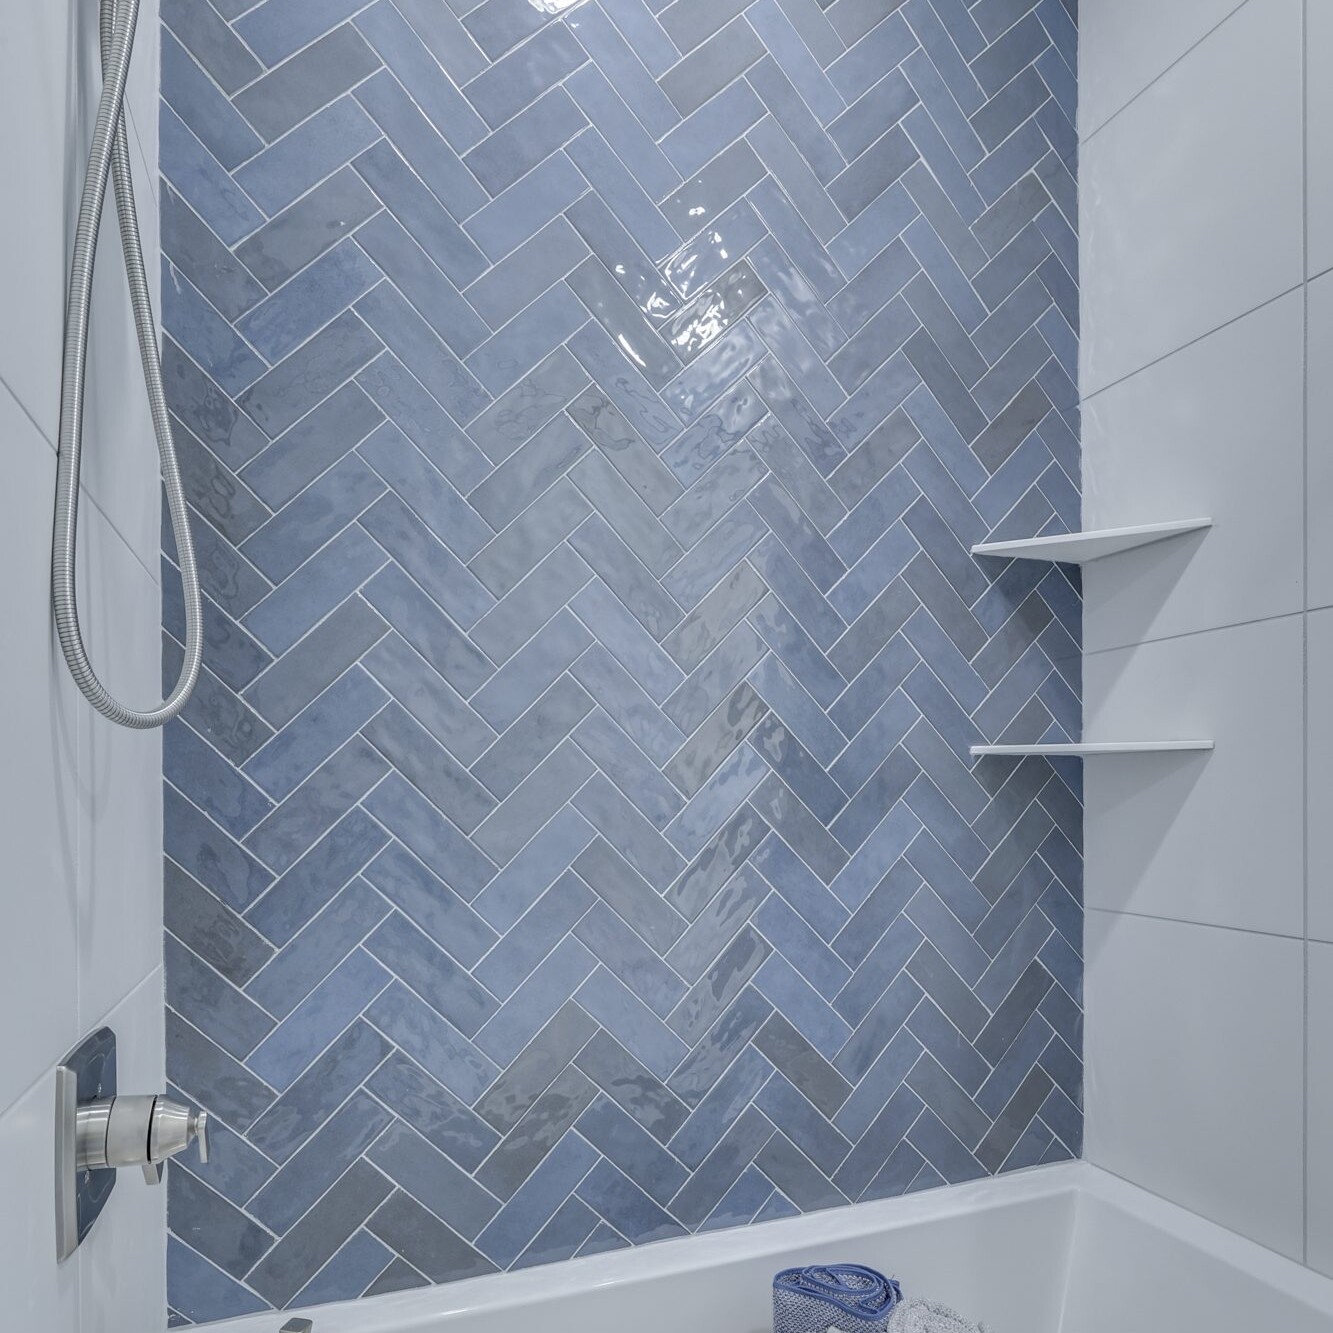 A bathroom with blue herringbone tile.